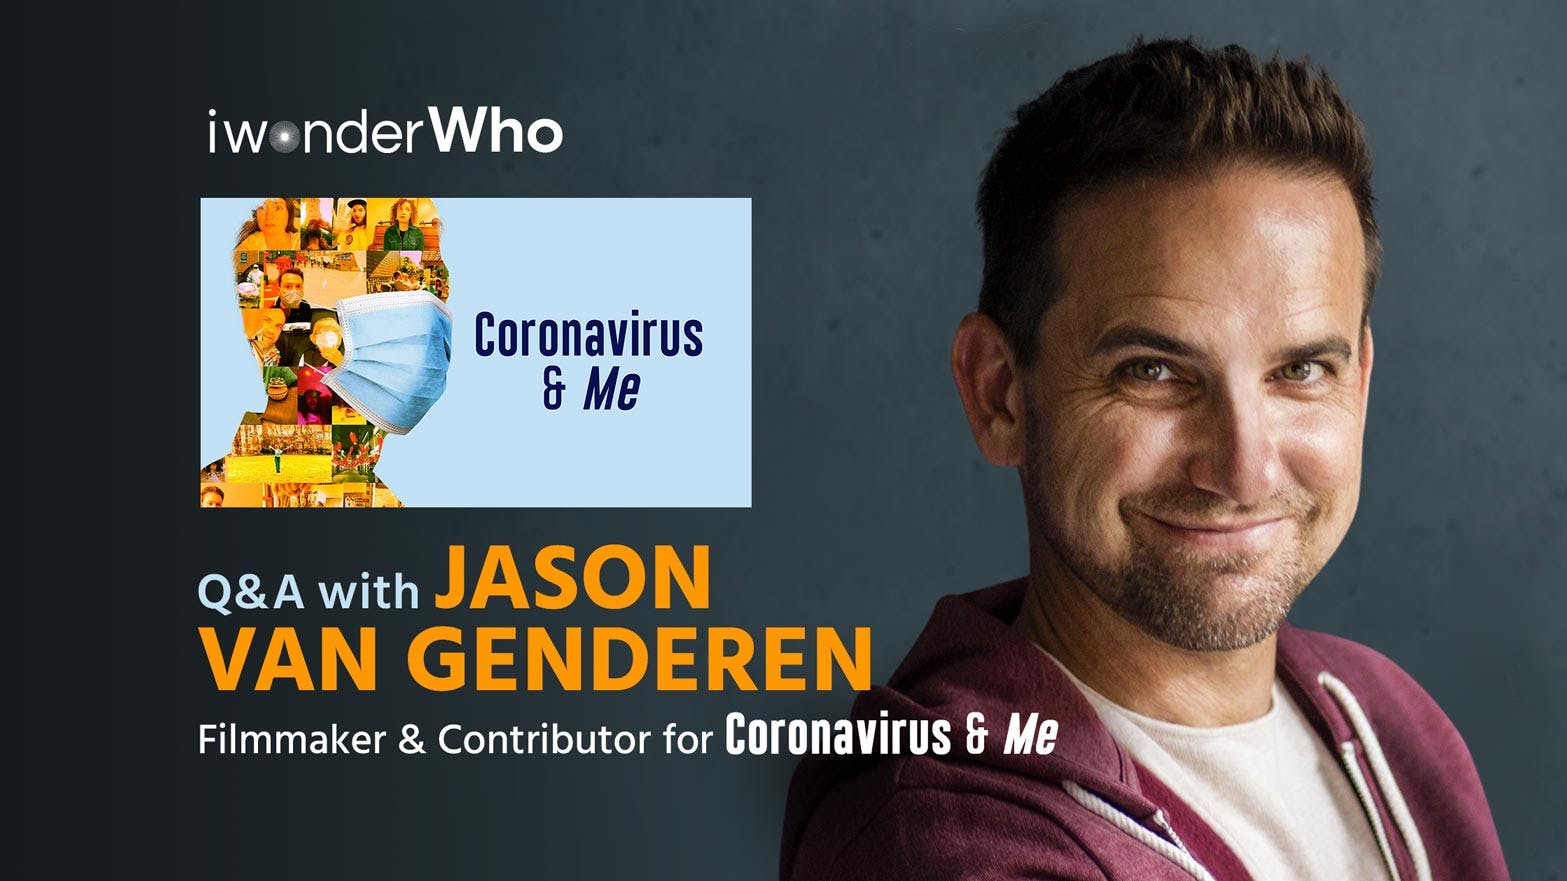 iwonderWho - Jason van Genderen (Coronavirus & Me)